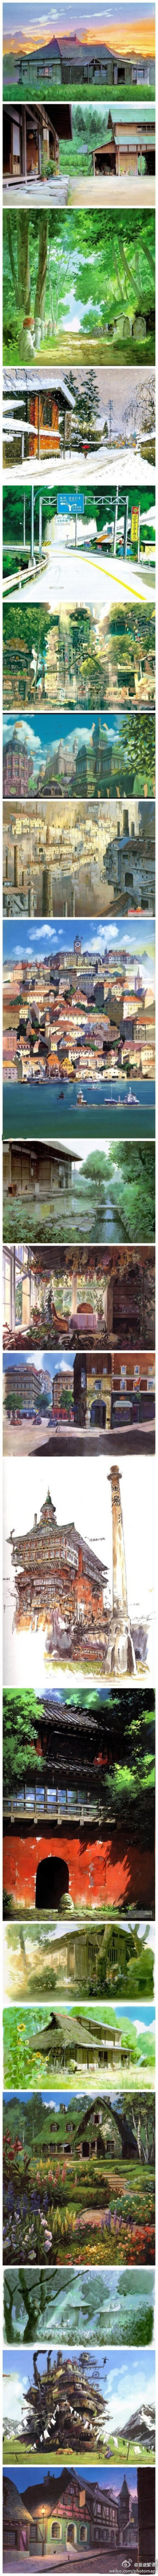 宫崎骏的建筑世界！喜欢宫崎骏的电影，画面细腻而优美、故事唯美而带着淡淡的忧伤。。。